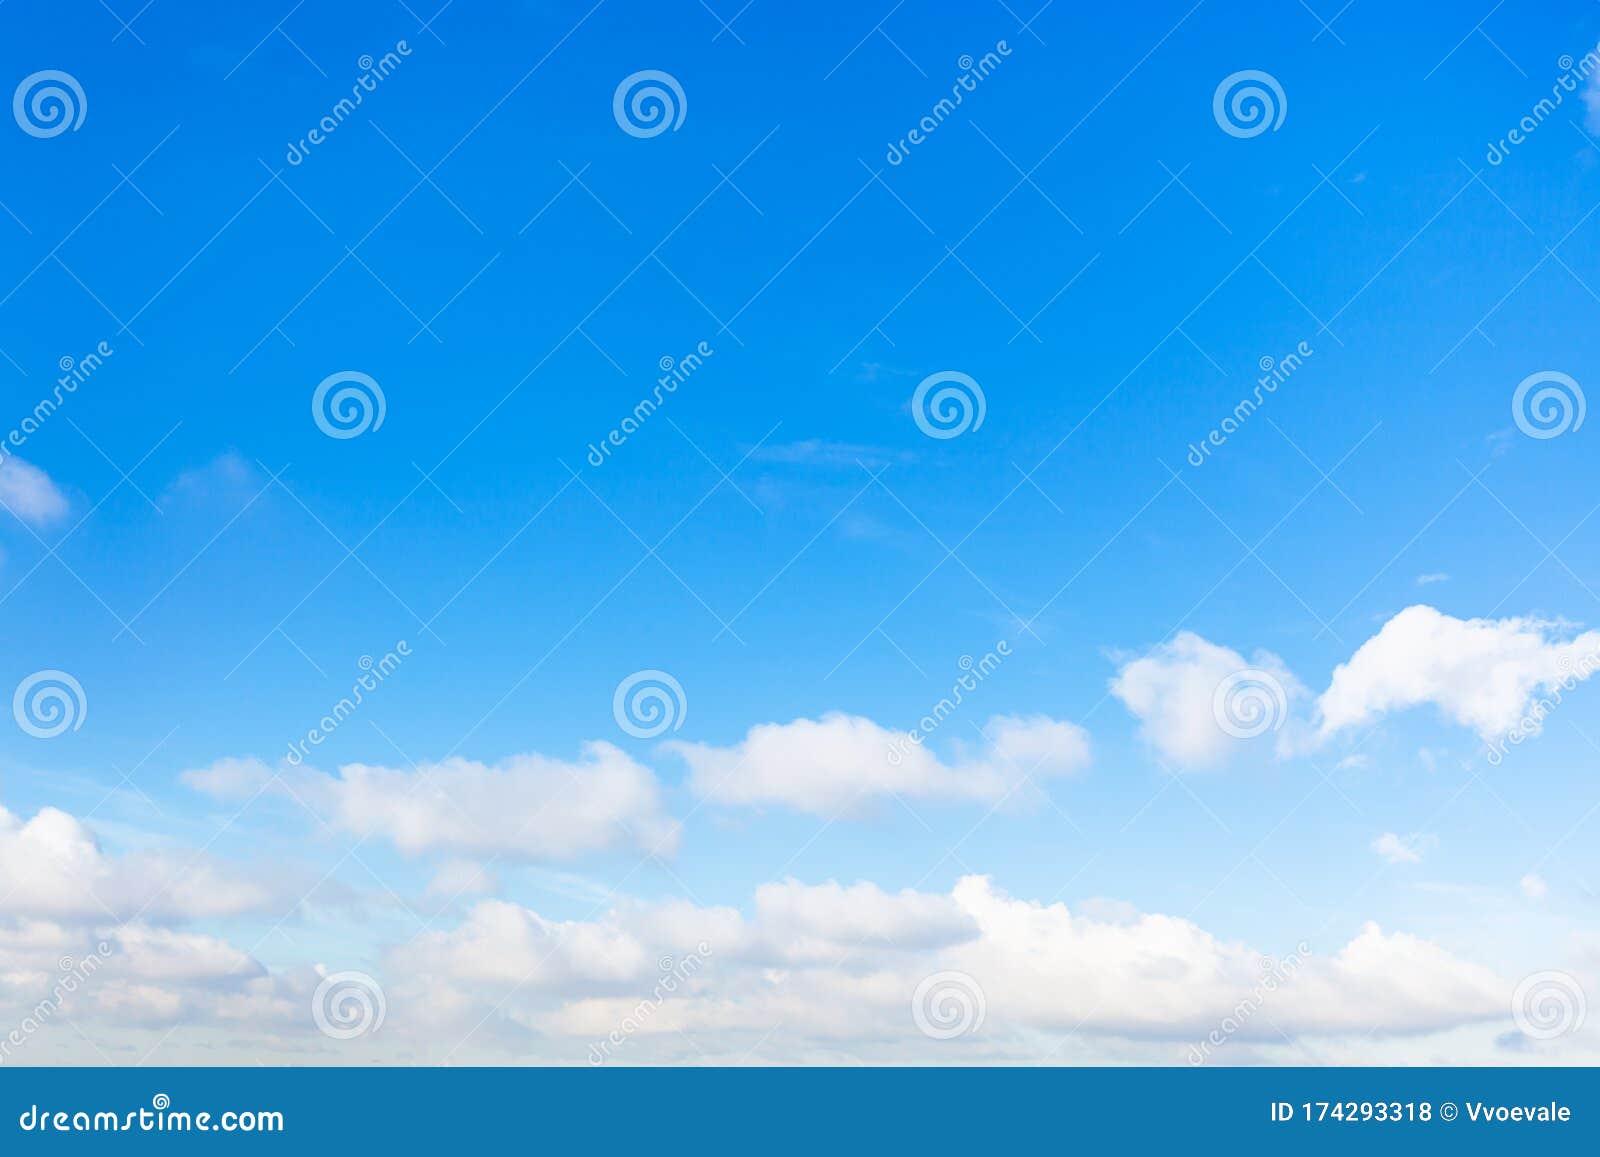 chain of little cumuli clouds in blue sky